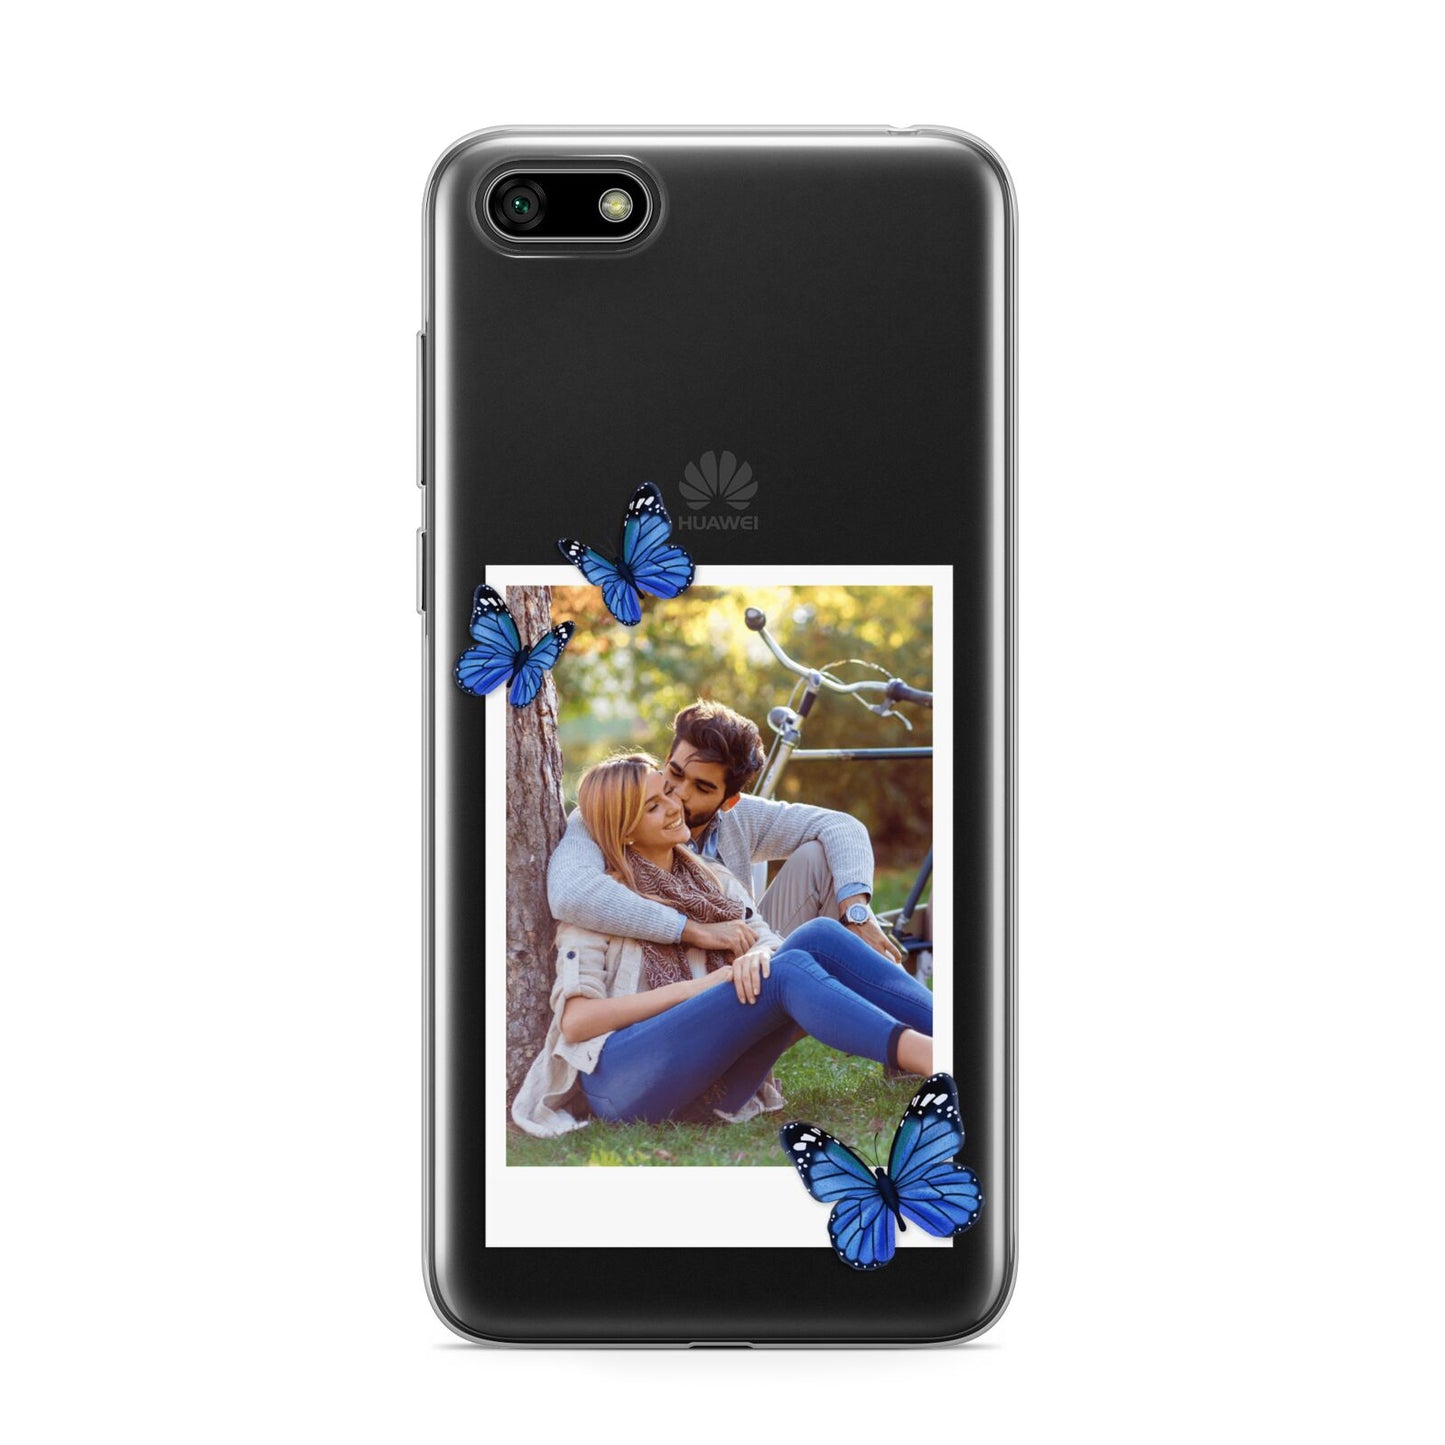 Polaroid Photo Huawei Y5 Prime 2018 Phone Case